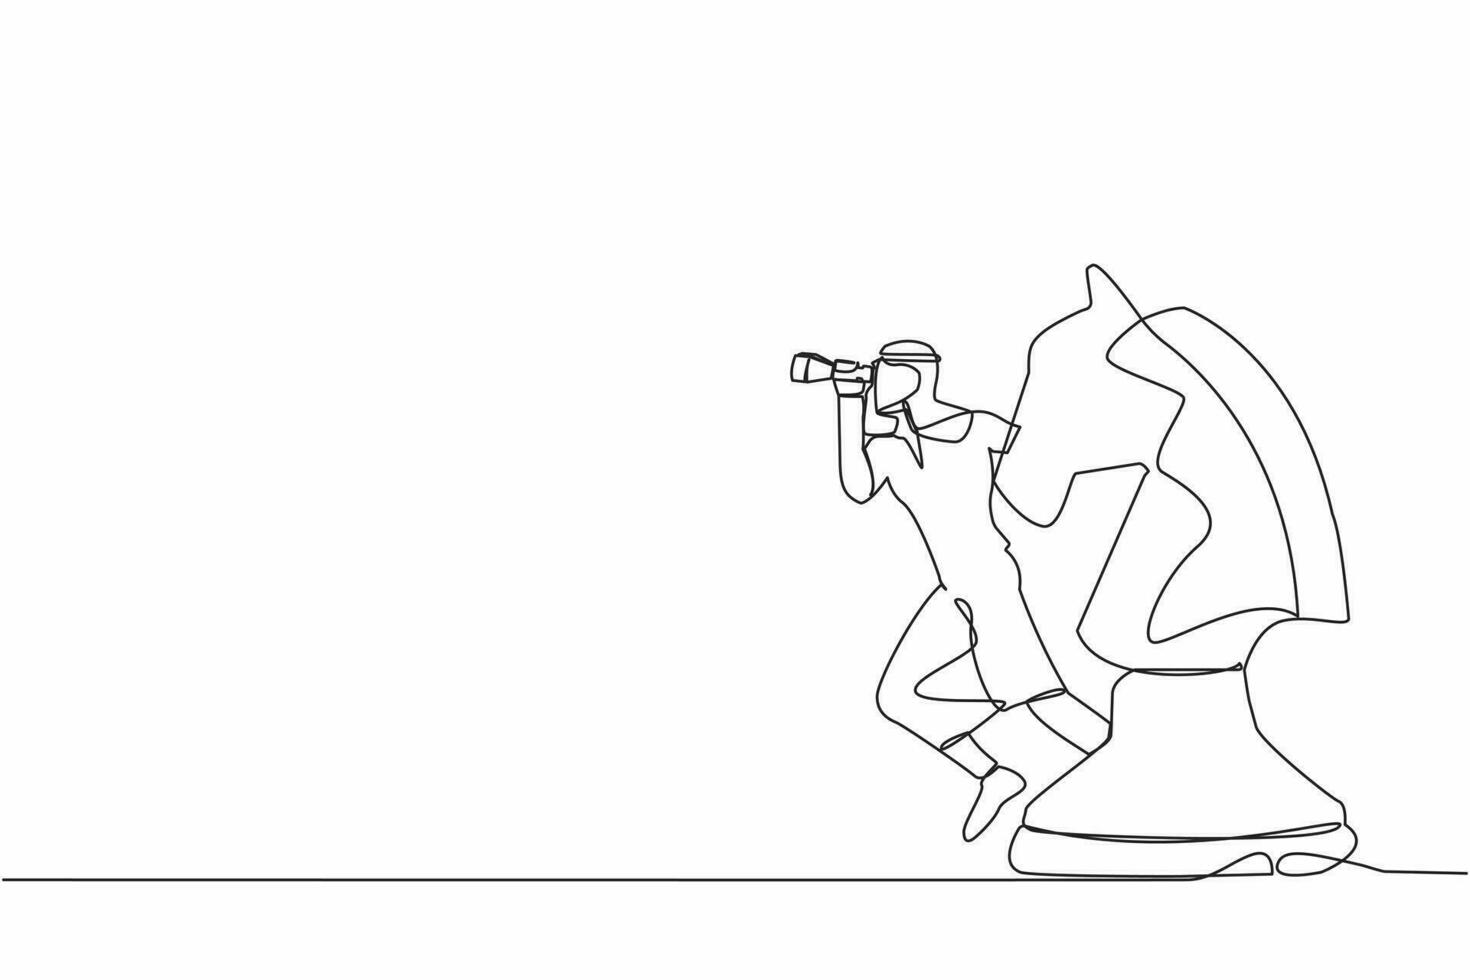 Single kontinuierlich Linie Zeichnung arabisch Geschäftsmann Führer Stehen auf Pferd Schach Stück mit Teleskop zu sehen Geschäft Vision. Wettbewerber Analyse Konzept. einer Linie Grafik Design Vektor Illustration